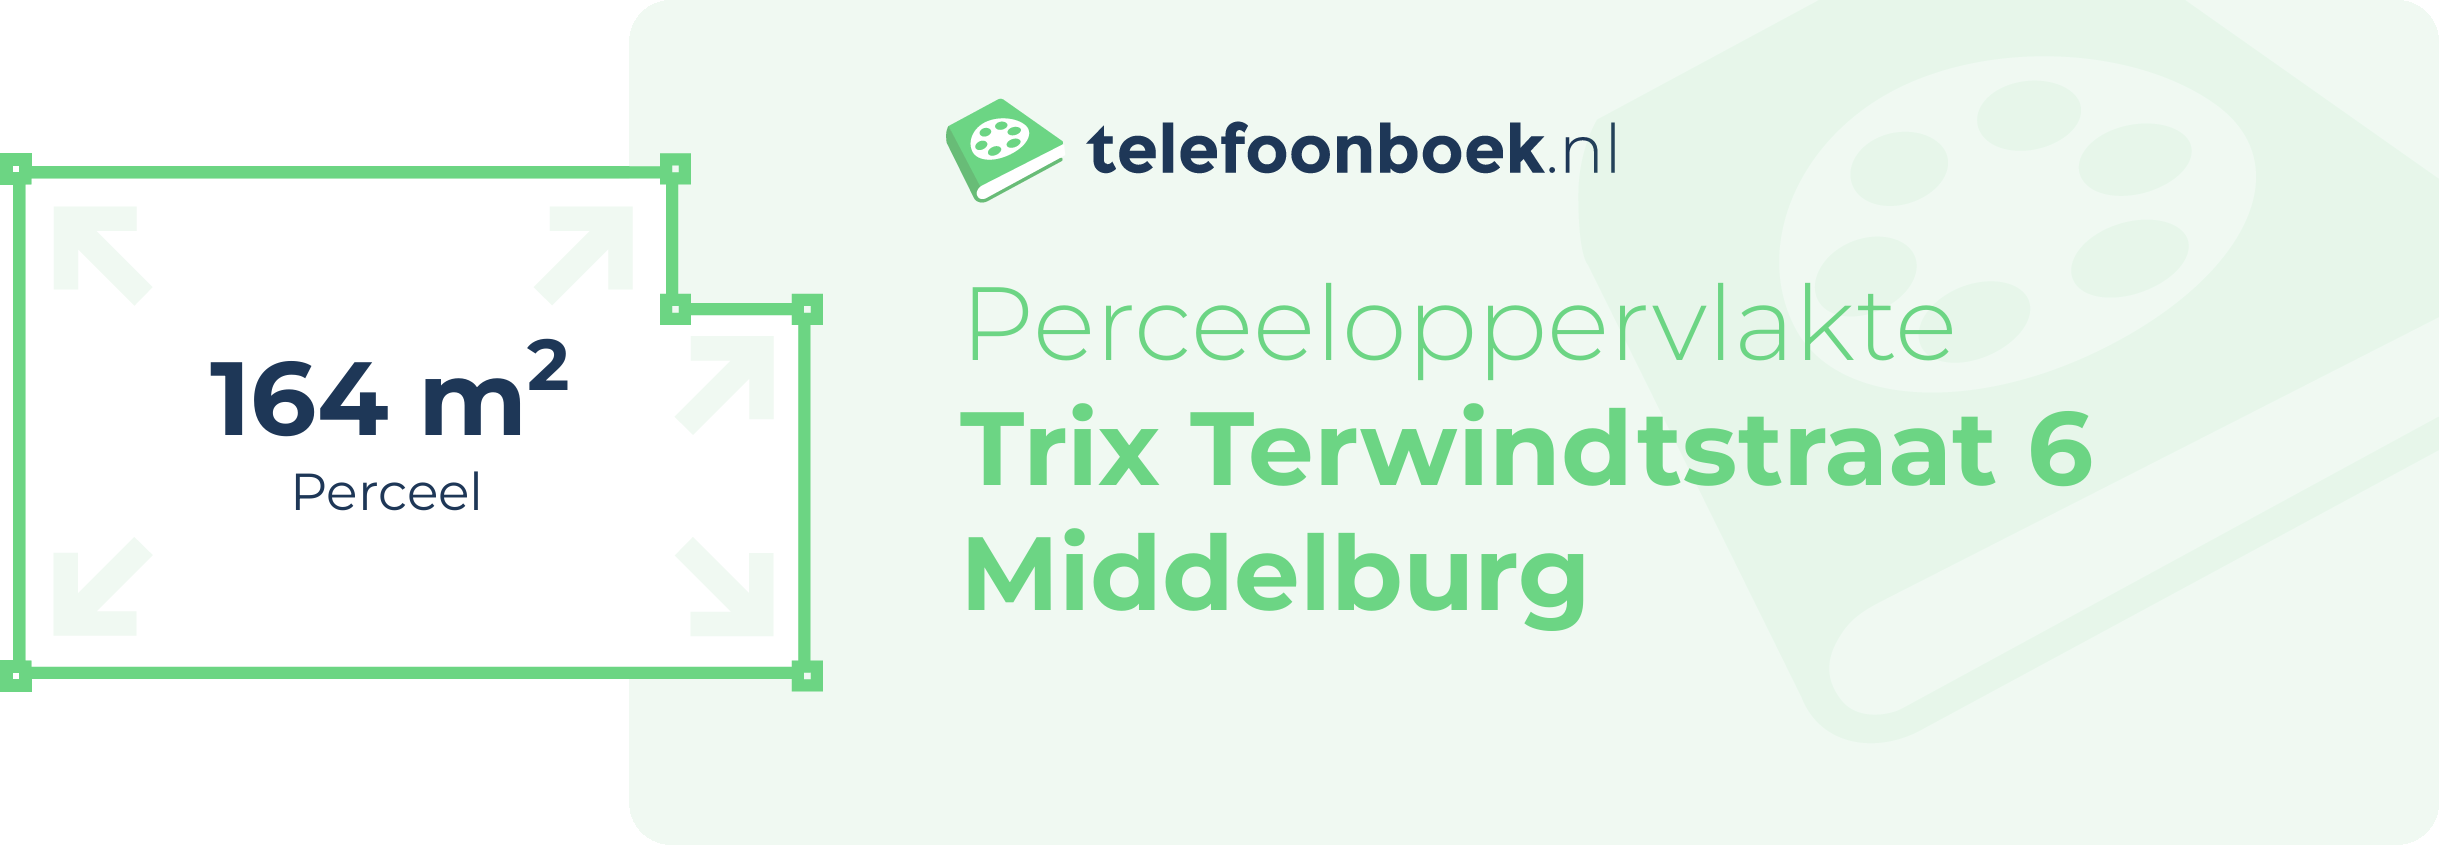 Perceeloppervlakte Trix Terwindtstraat 6 Middelburg